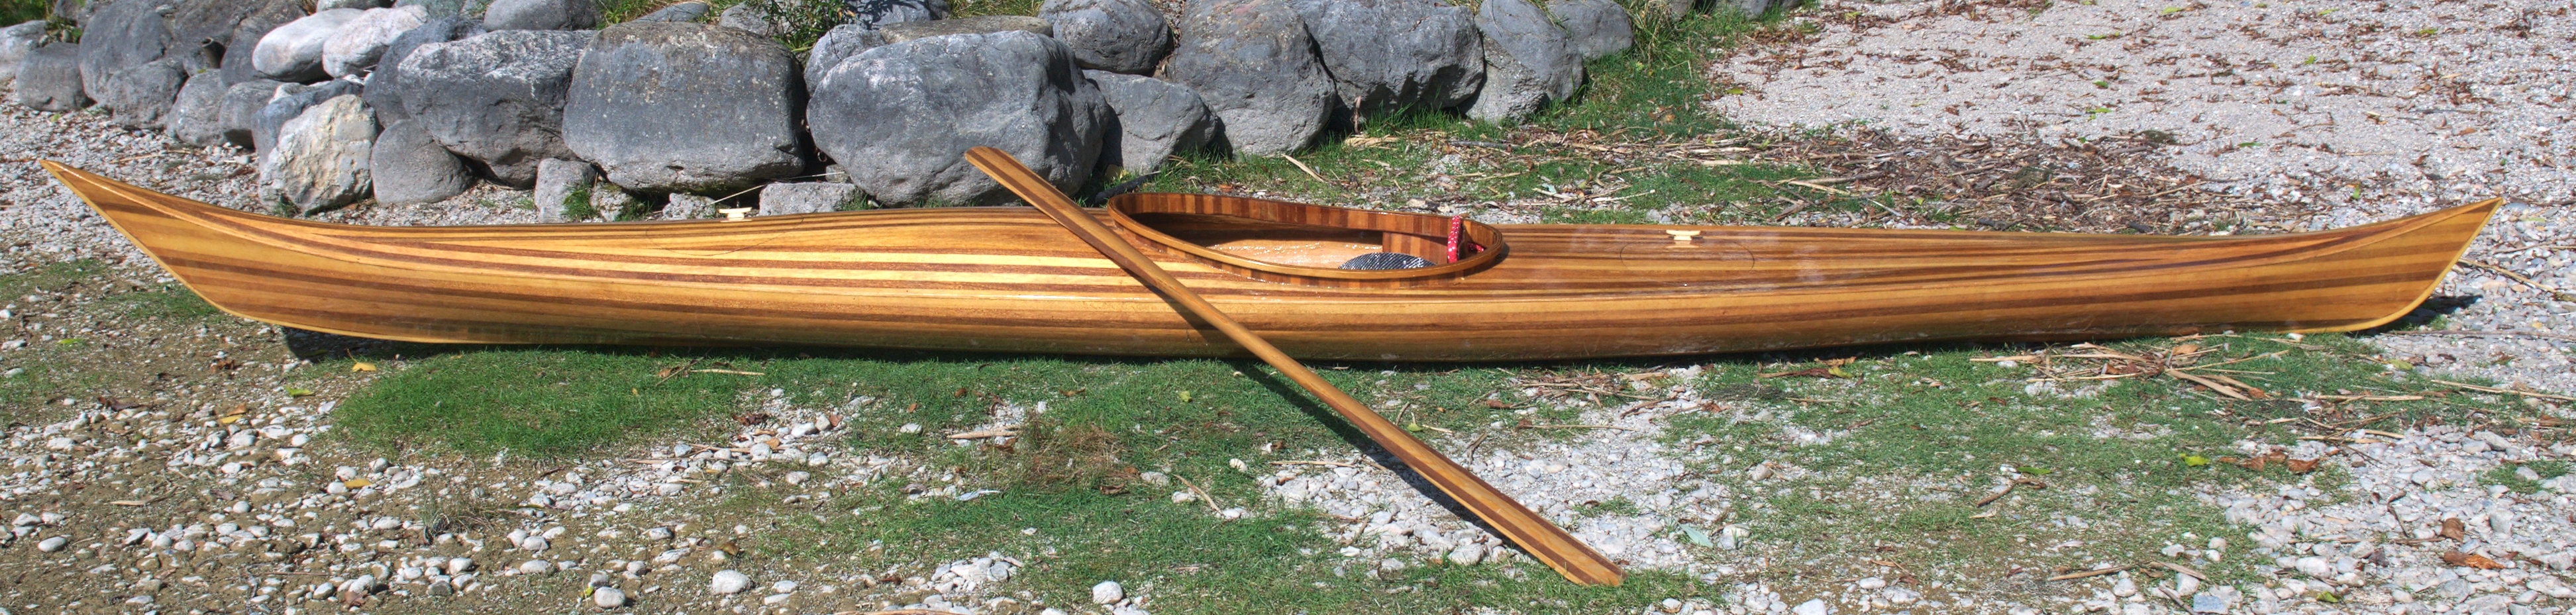 Some images on Kayak kit wood strip